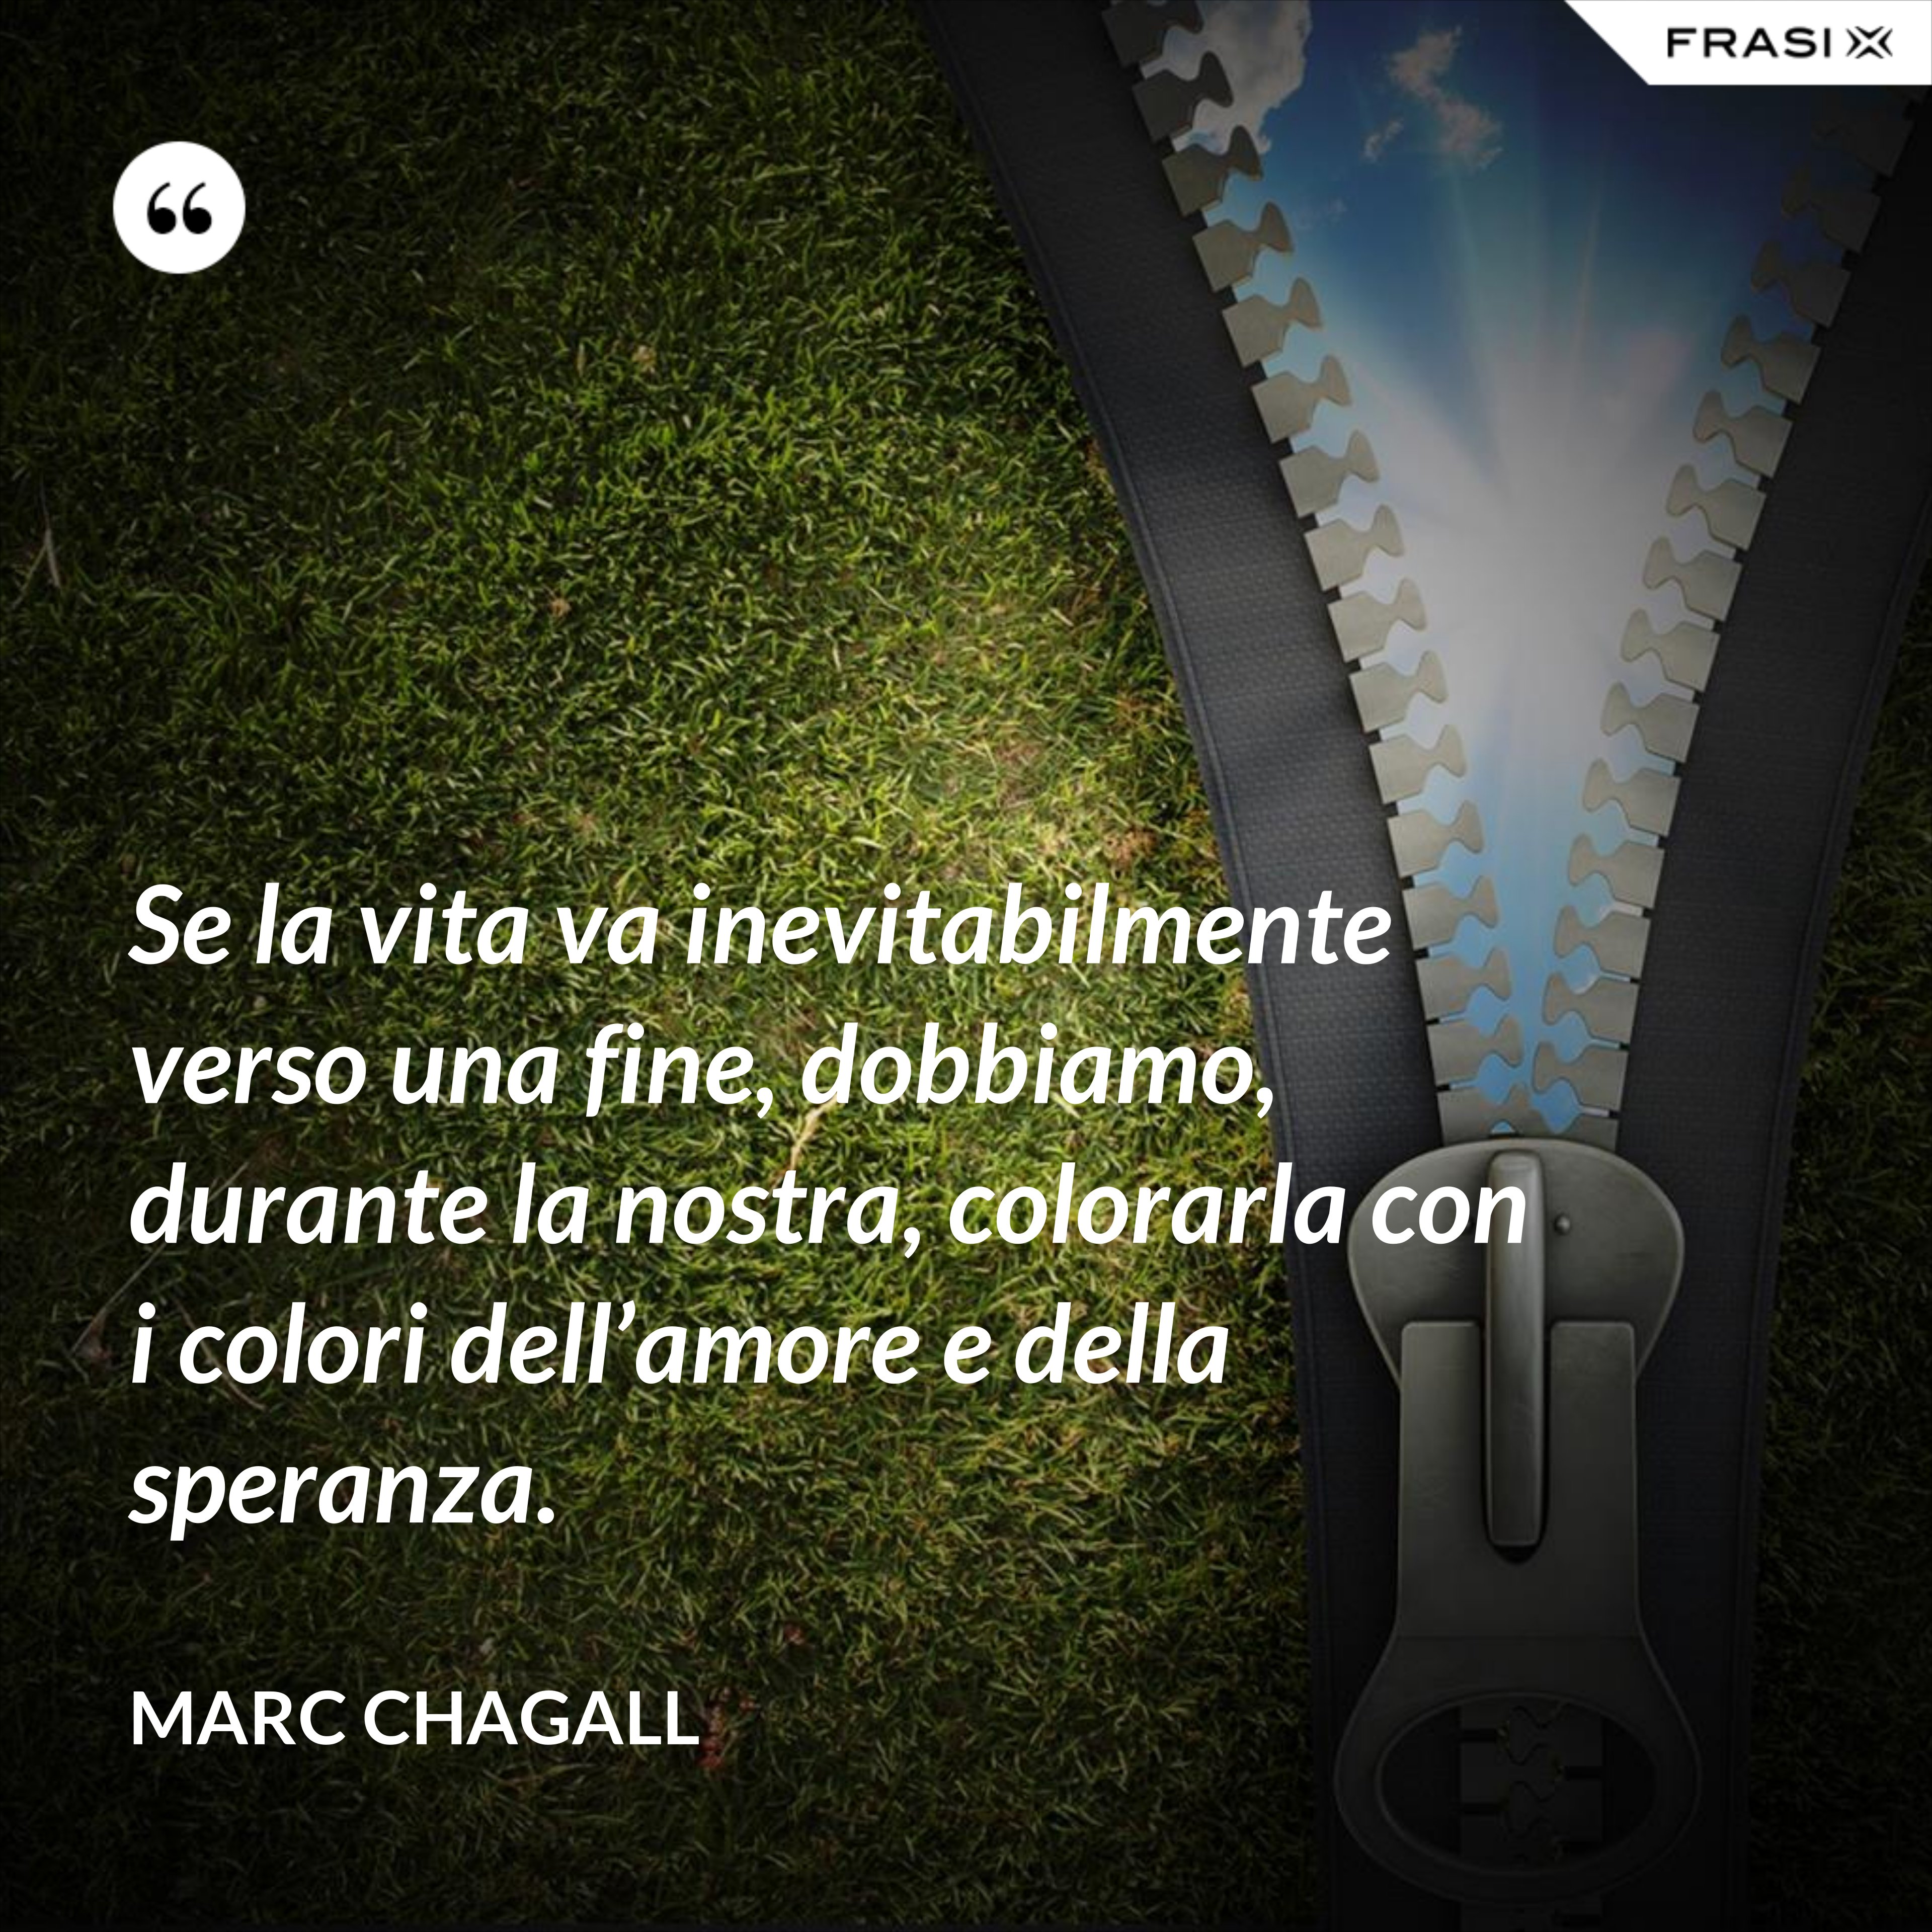 Se la vita va inevitabilmente verso una fine, dobbiamo, durante la nostra, colorarla con i colori dell’amore e della speranza. - Marc Chagall